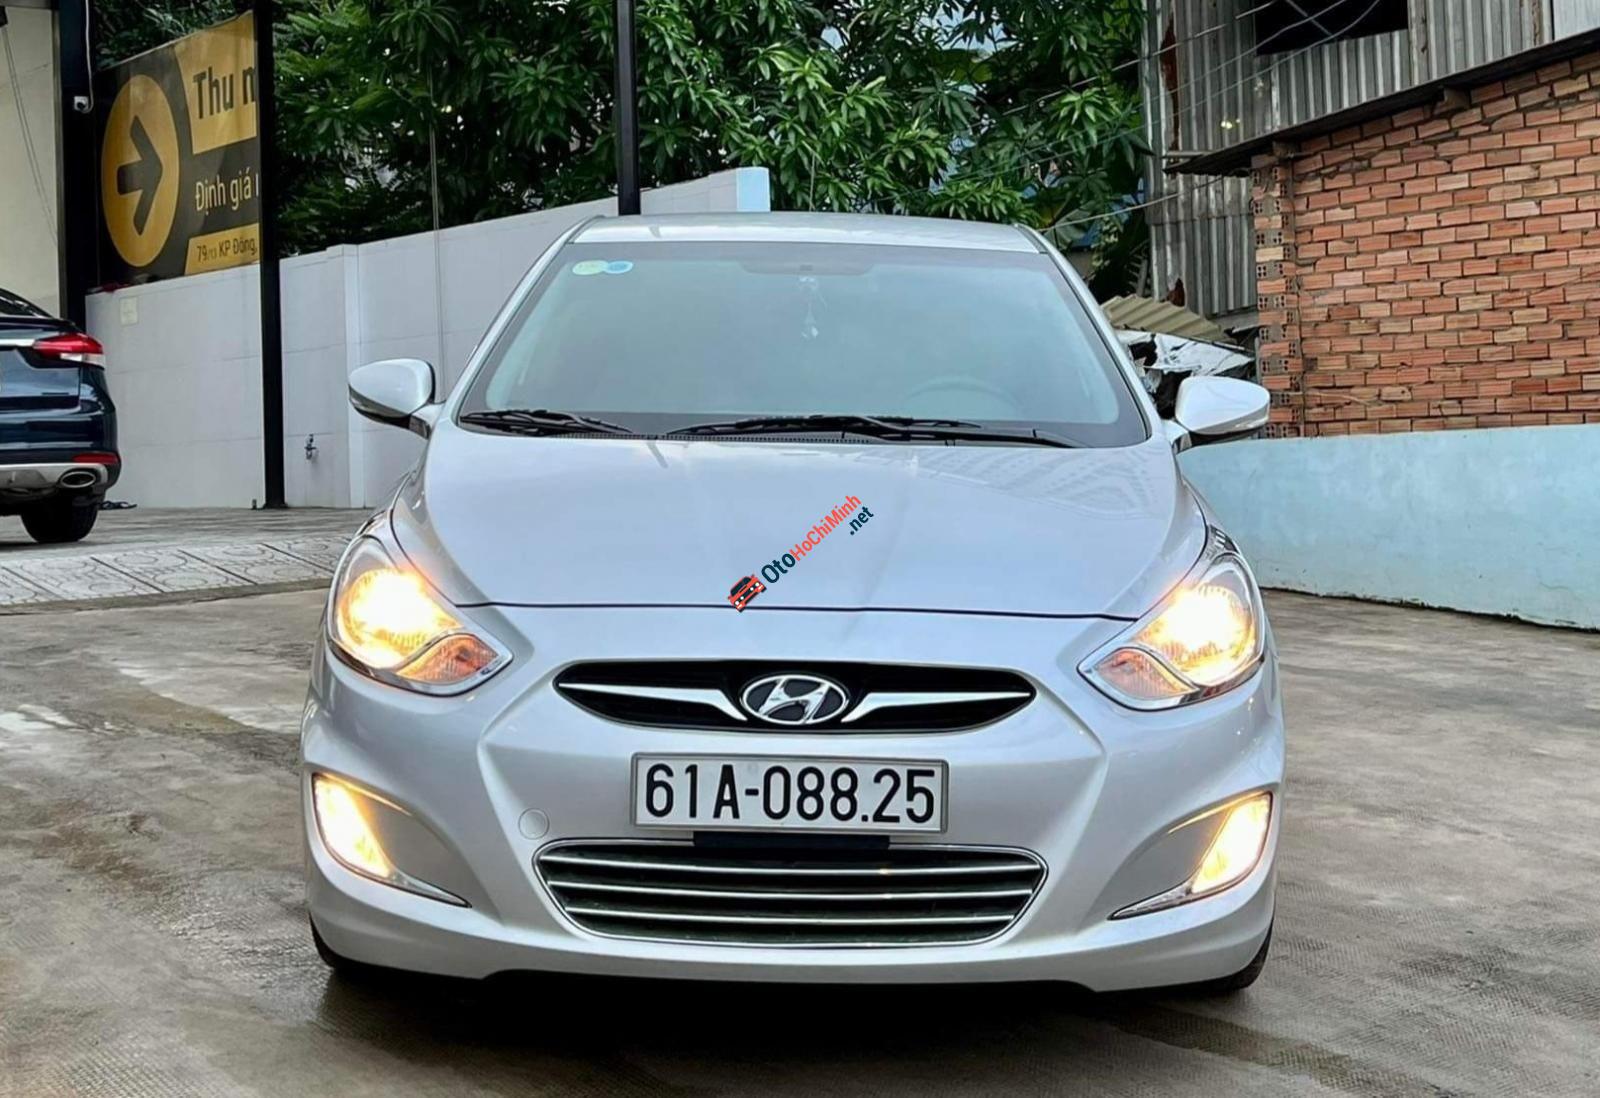 Hyundai Accent 2012 Tự động    Giá 350 triệu  0982990068  Xe Hơi Việt   Chợ Mua Bán Xe Ô Tô Xe Máy Xe Tải Xe Khách Online